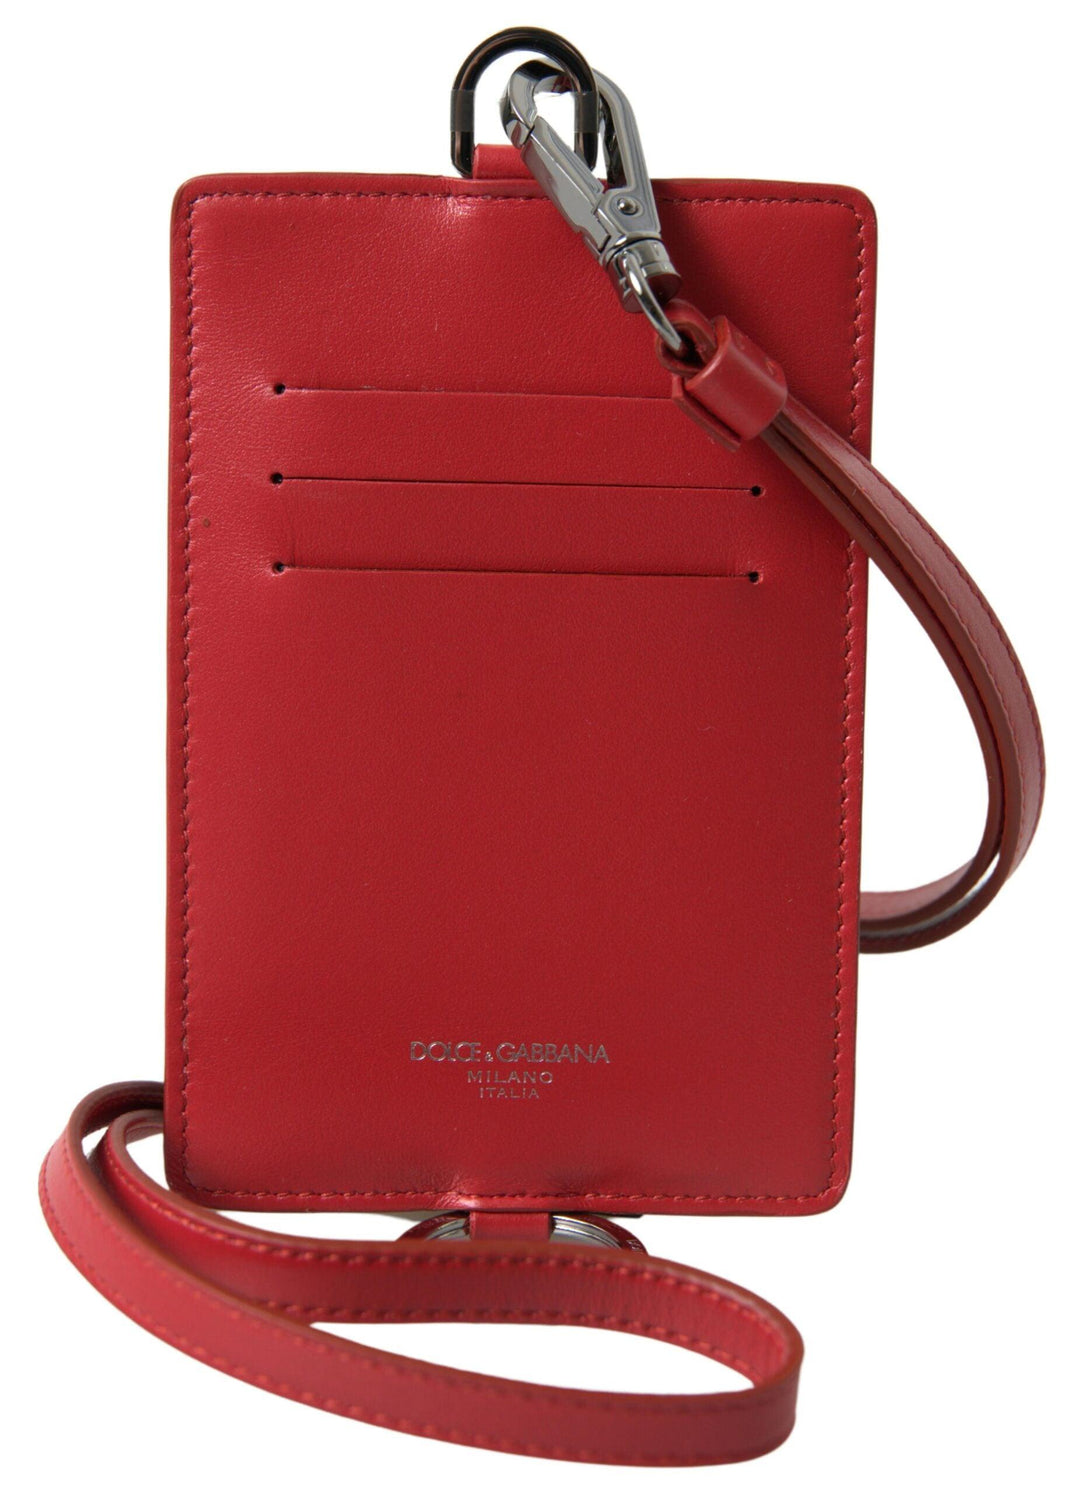 Dolce & Gabbana Red Leather Lanyard Logo Card Holder Men Wallet - Ellie Belle